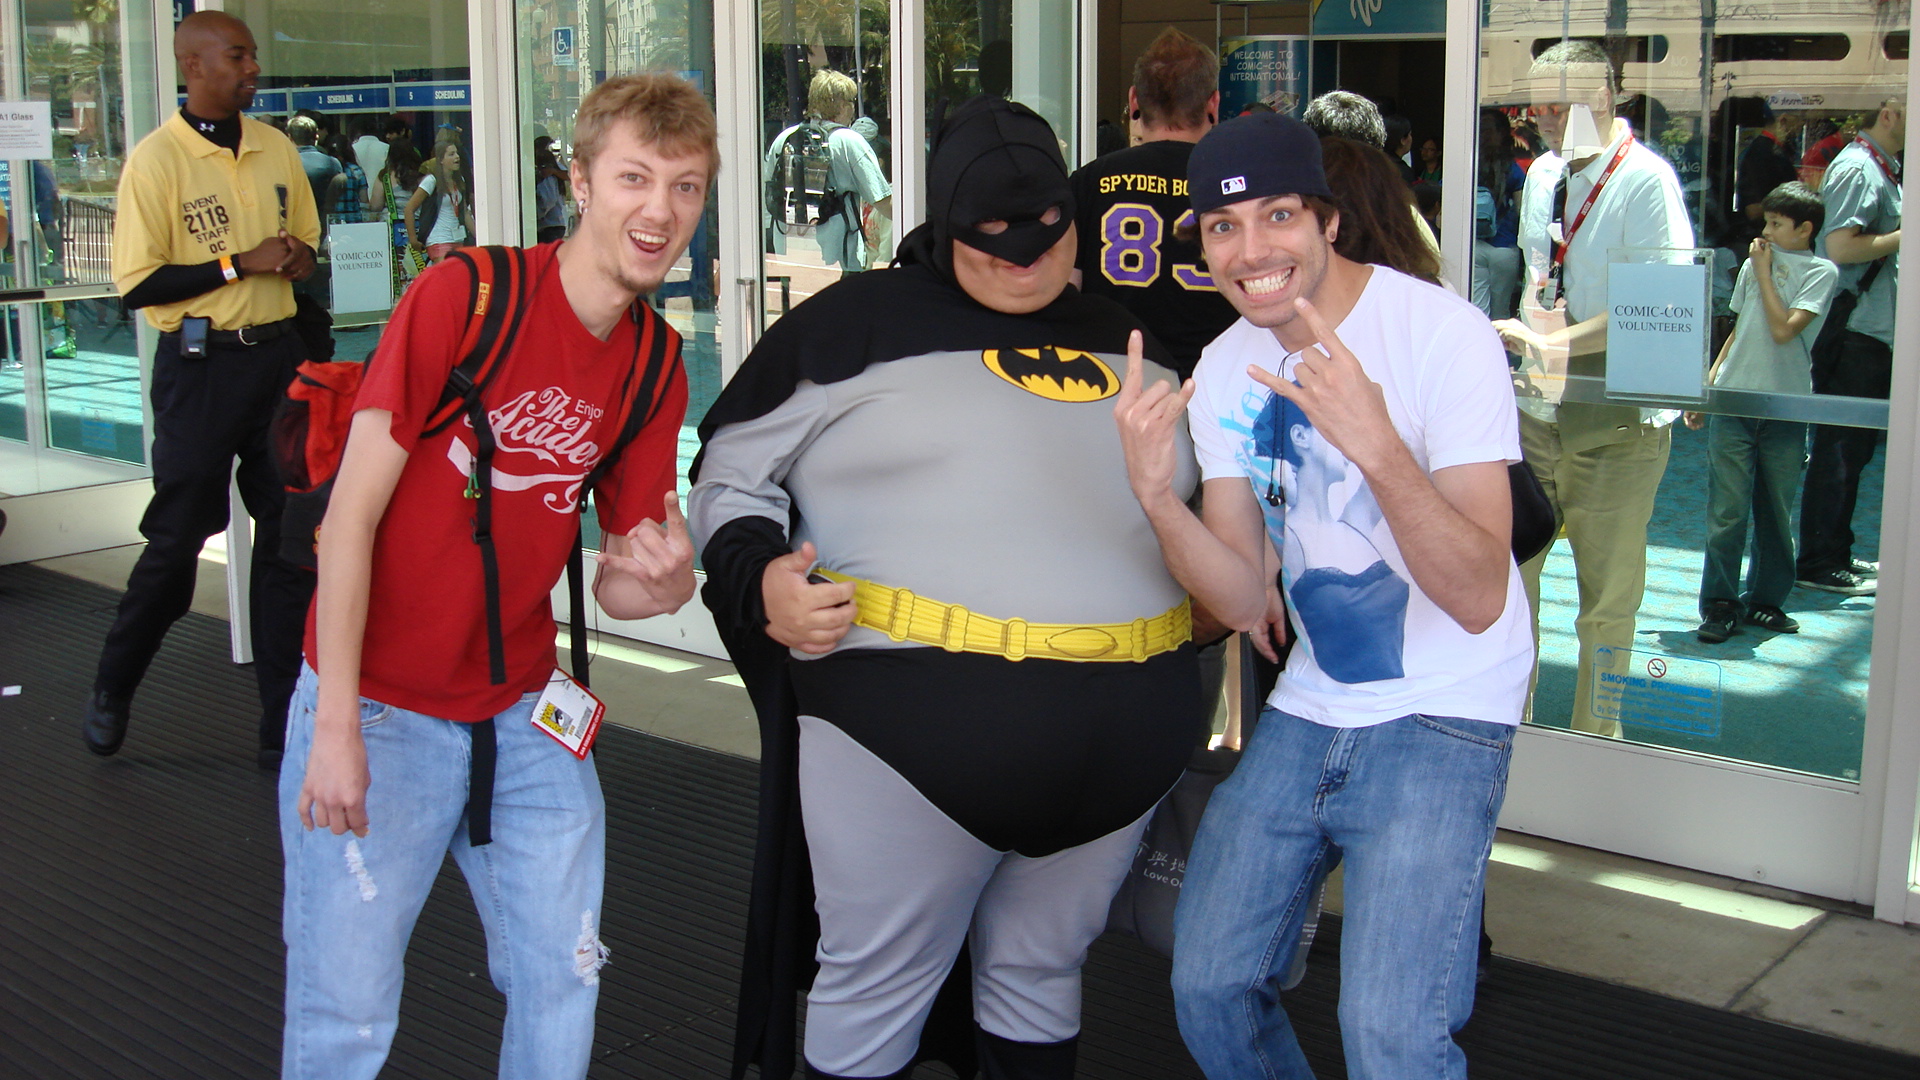 Comic Con - Batman and Friends